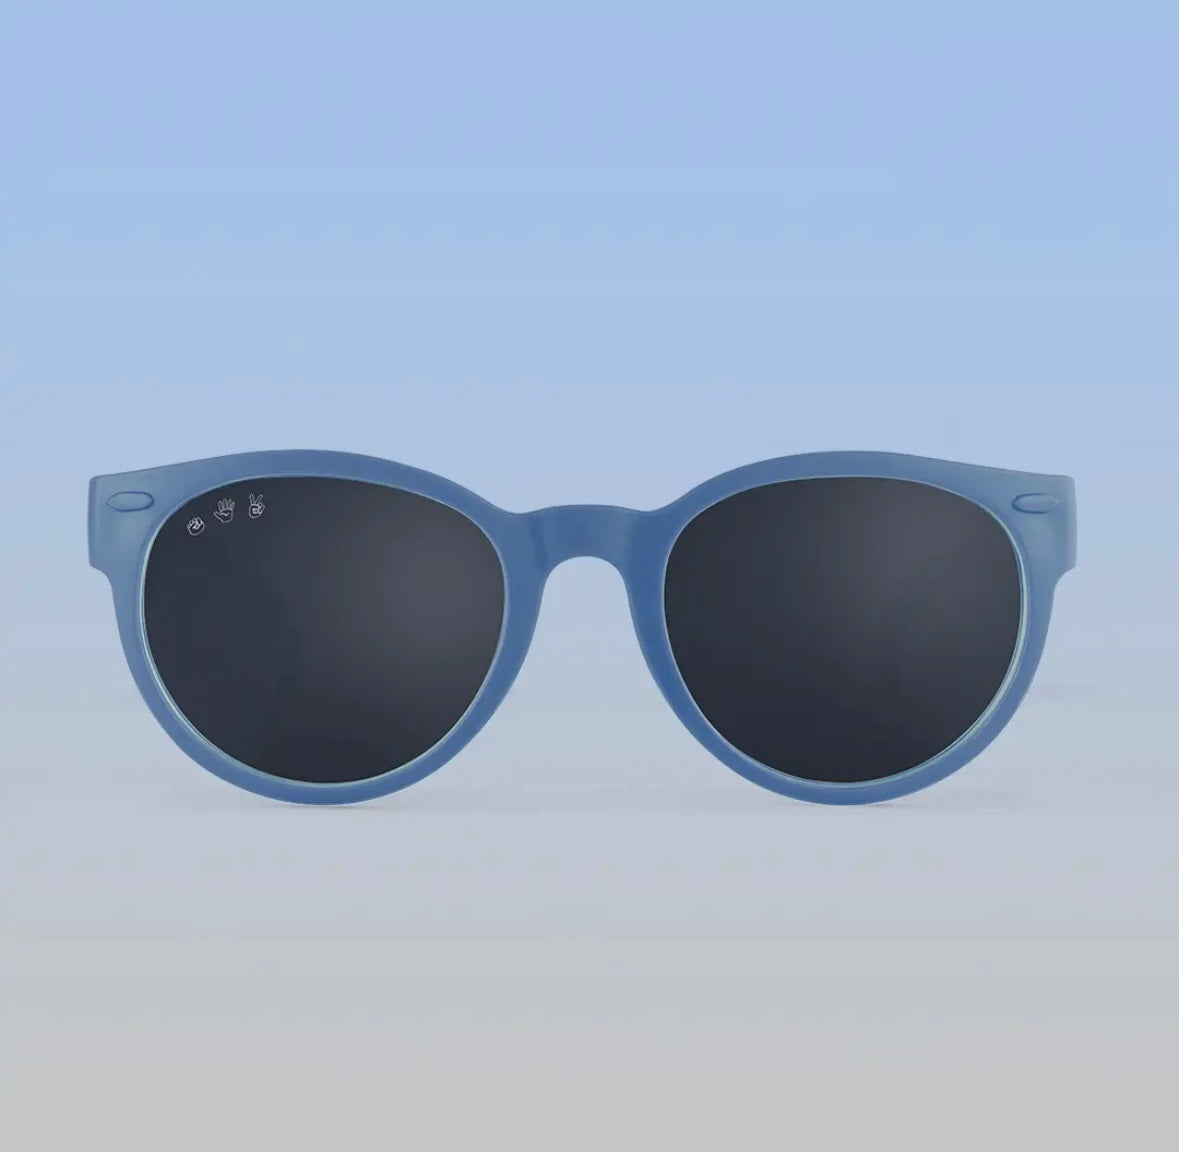 Roshambo Toddler Sunglasses - Skywalker Cloudy Blue, Grey Lens